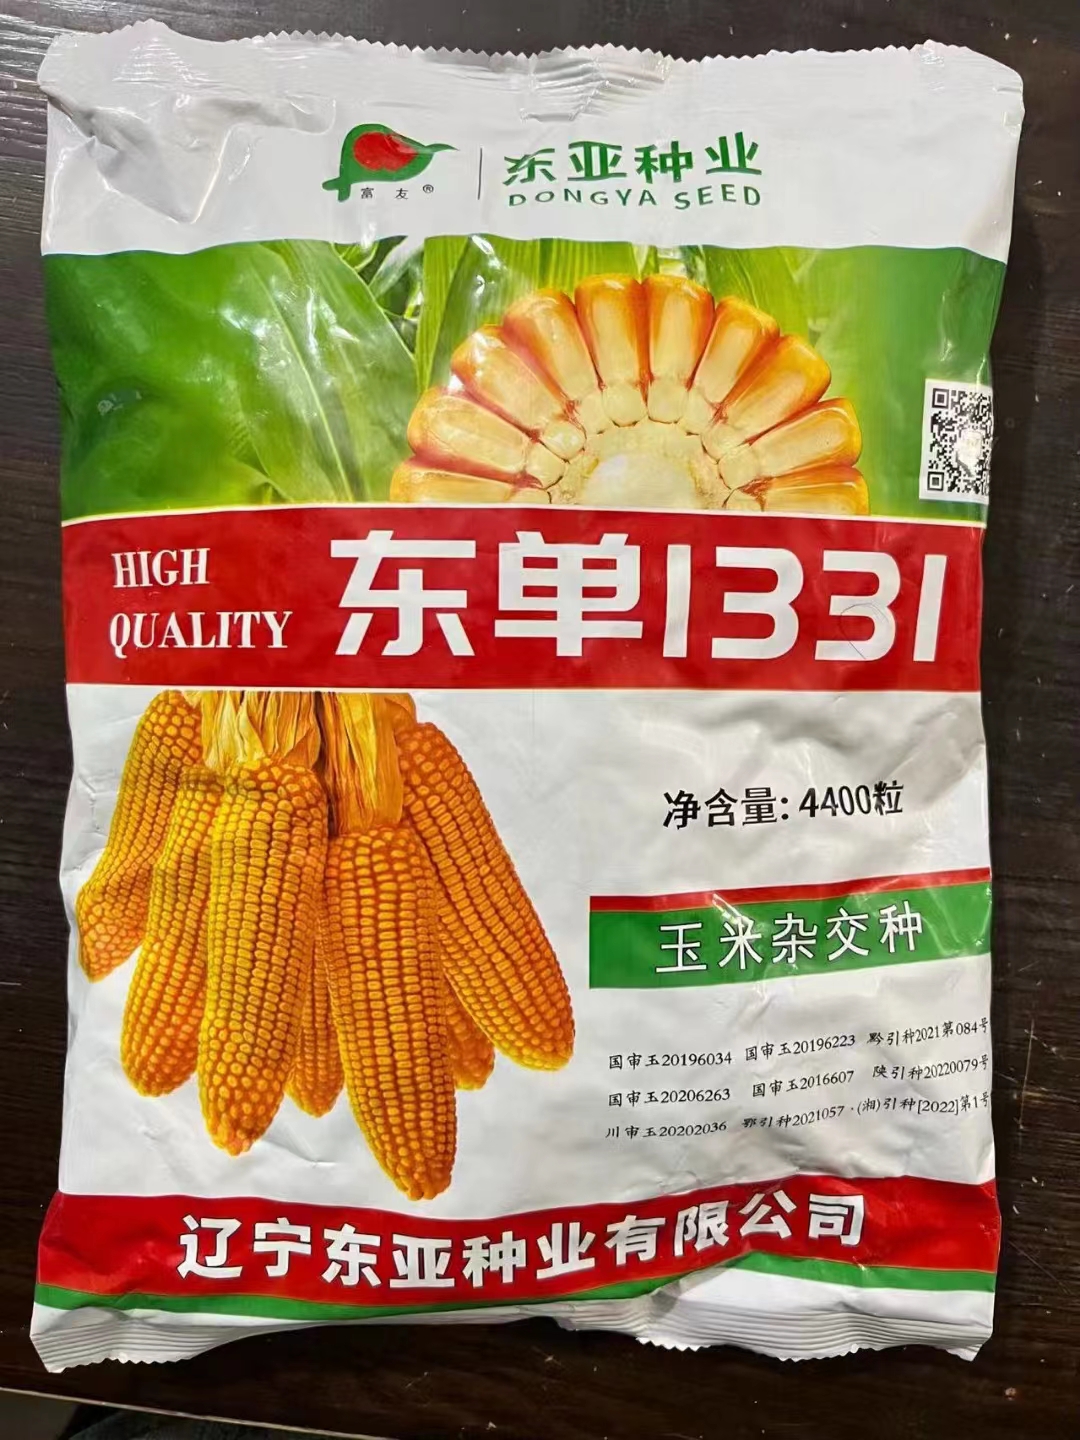 郑州东丹1331玉米种子